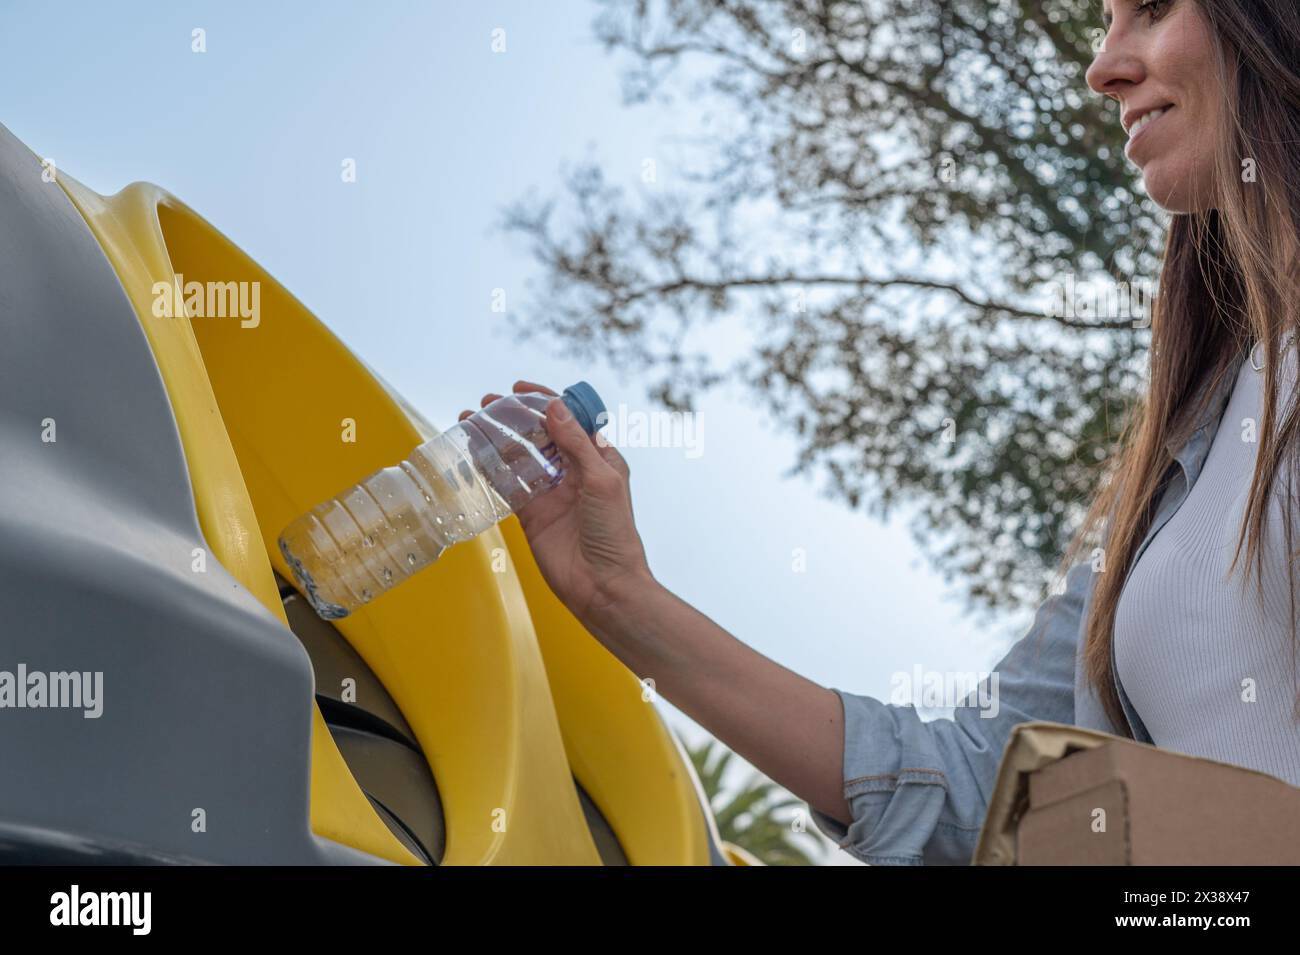 Eine Frau wirft eine Plastikflasche in einen Recyclingbehälter. Die Flasche besteht aus Kunststoff und wird recycelt. Die Frau lächelt beim Werfen Stockfoto